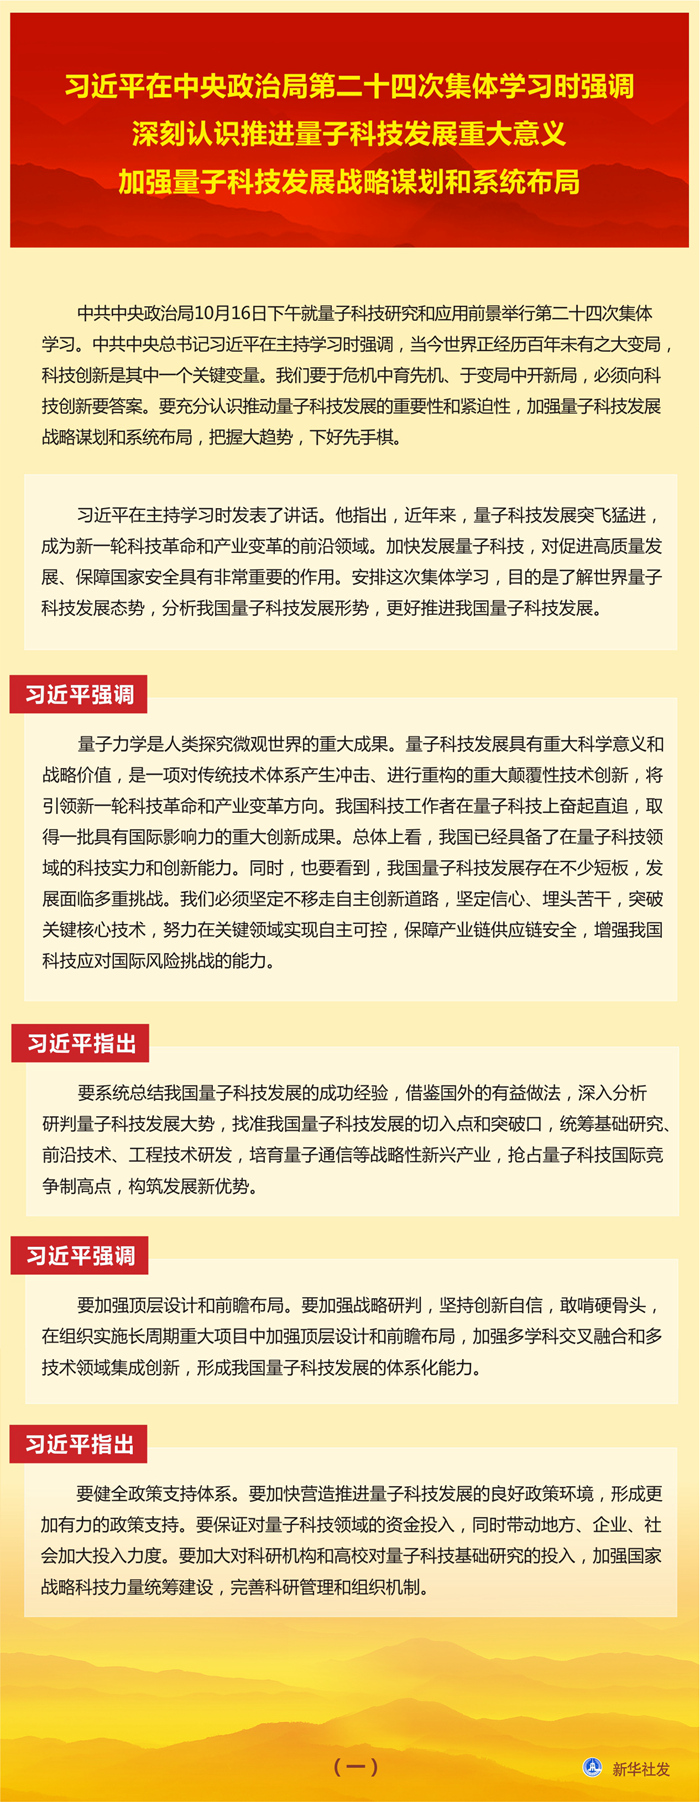 习近平在中央政治局第二十四次集体学习时强调